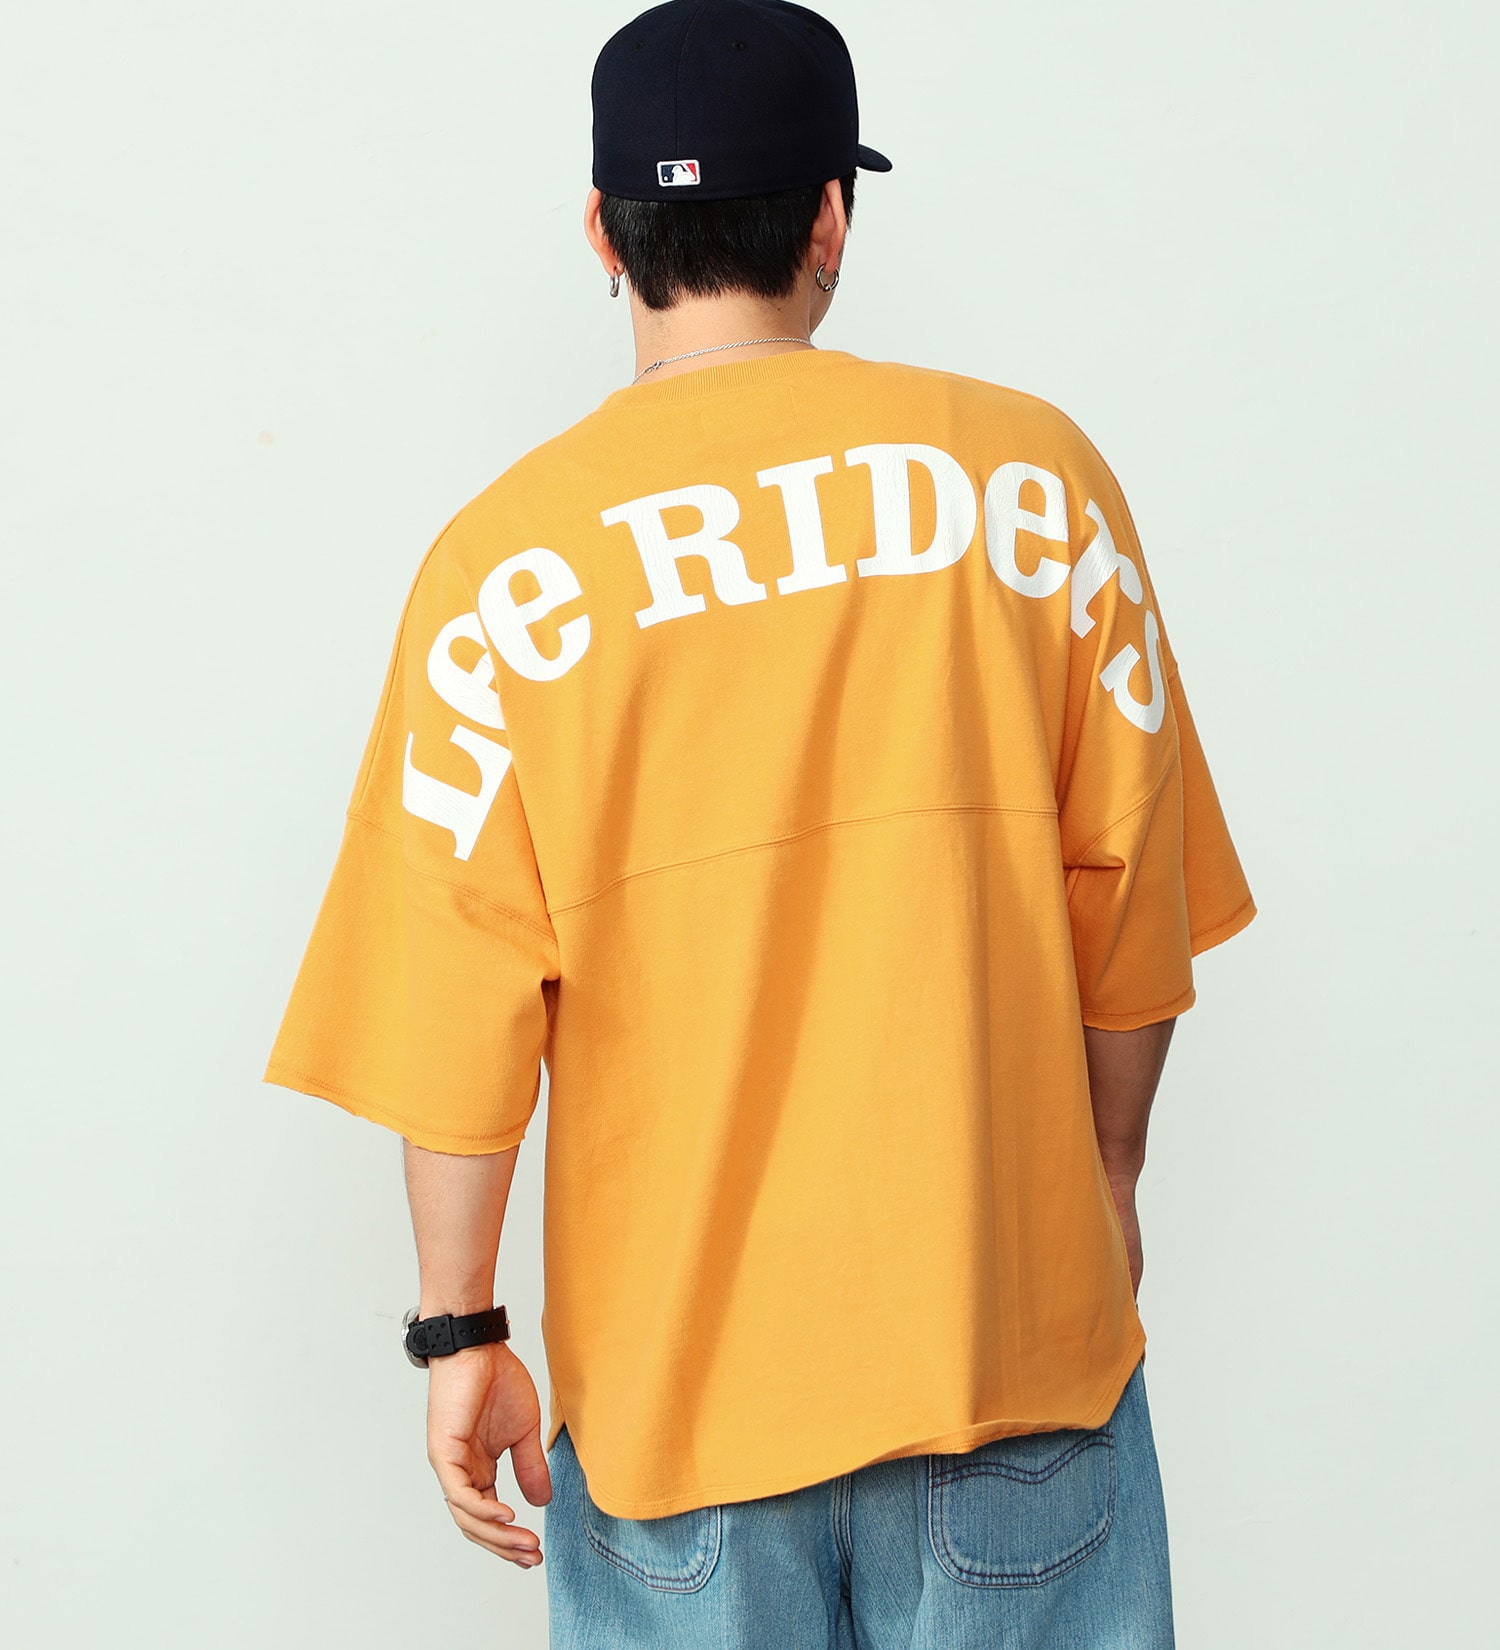 Lee(リー)の【GW SALE】バックアーチ ショートスリーブTee|トップス/Tシャツ/カットソー/メンズ|オレンジ